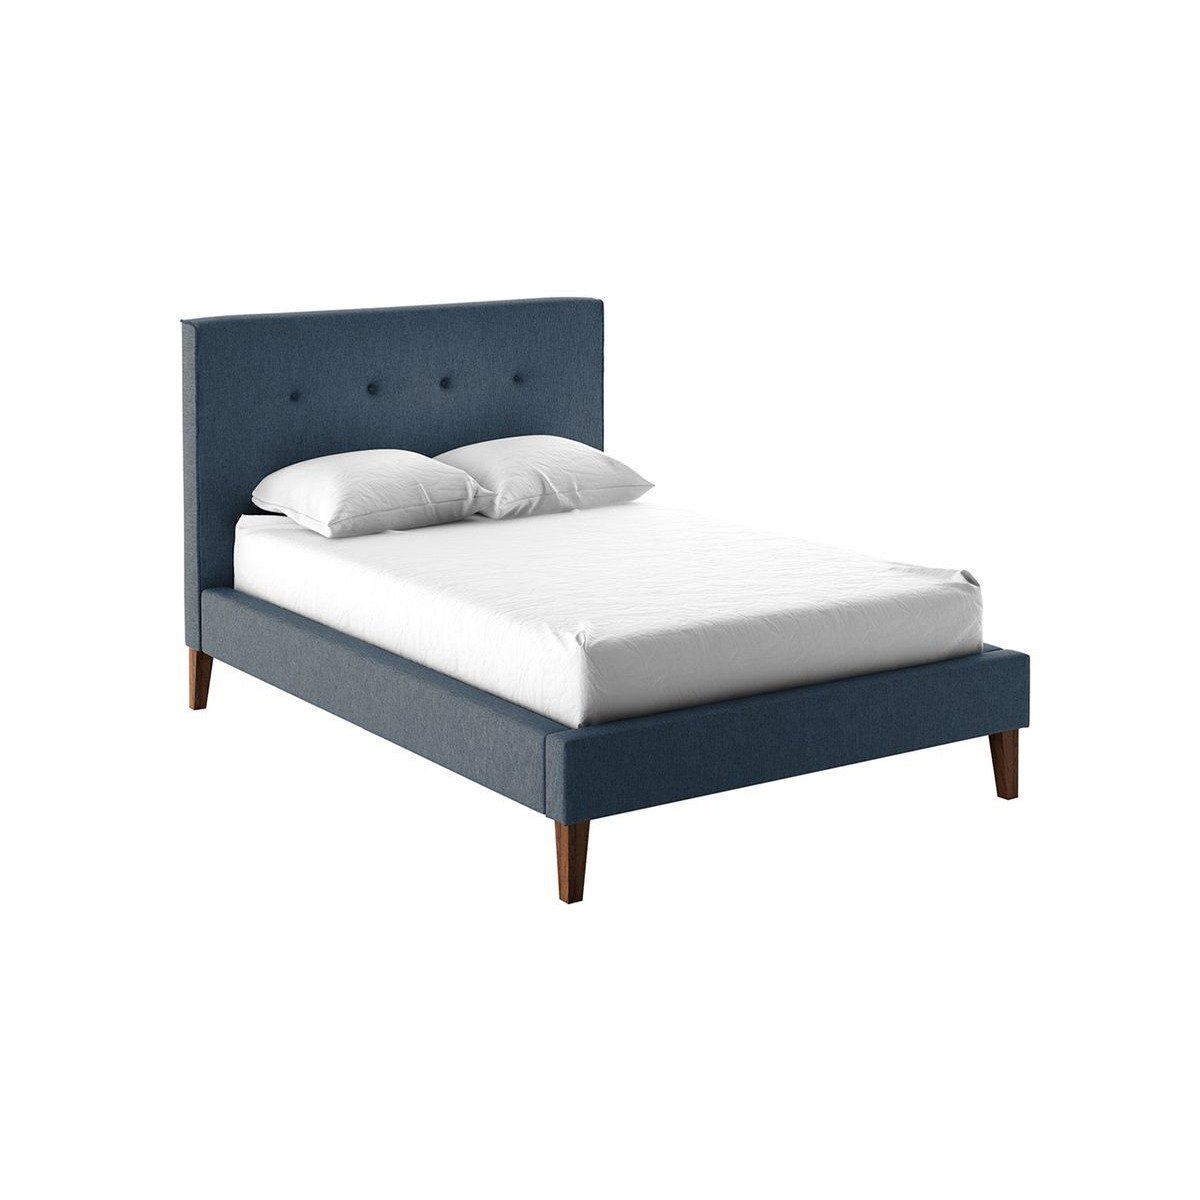 Inspire Upholstered Bed Frame, blue - image 1